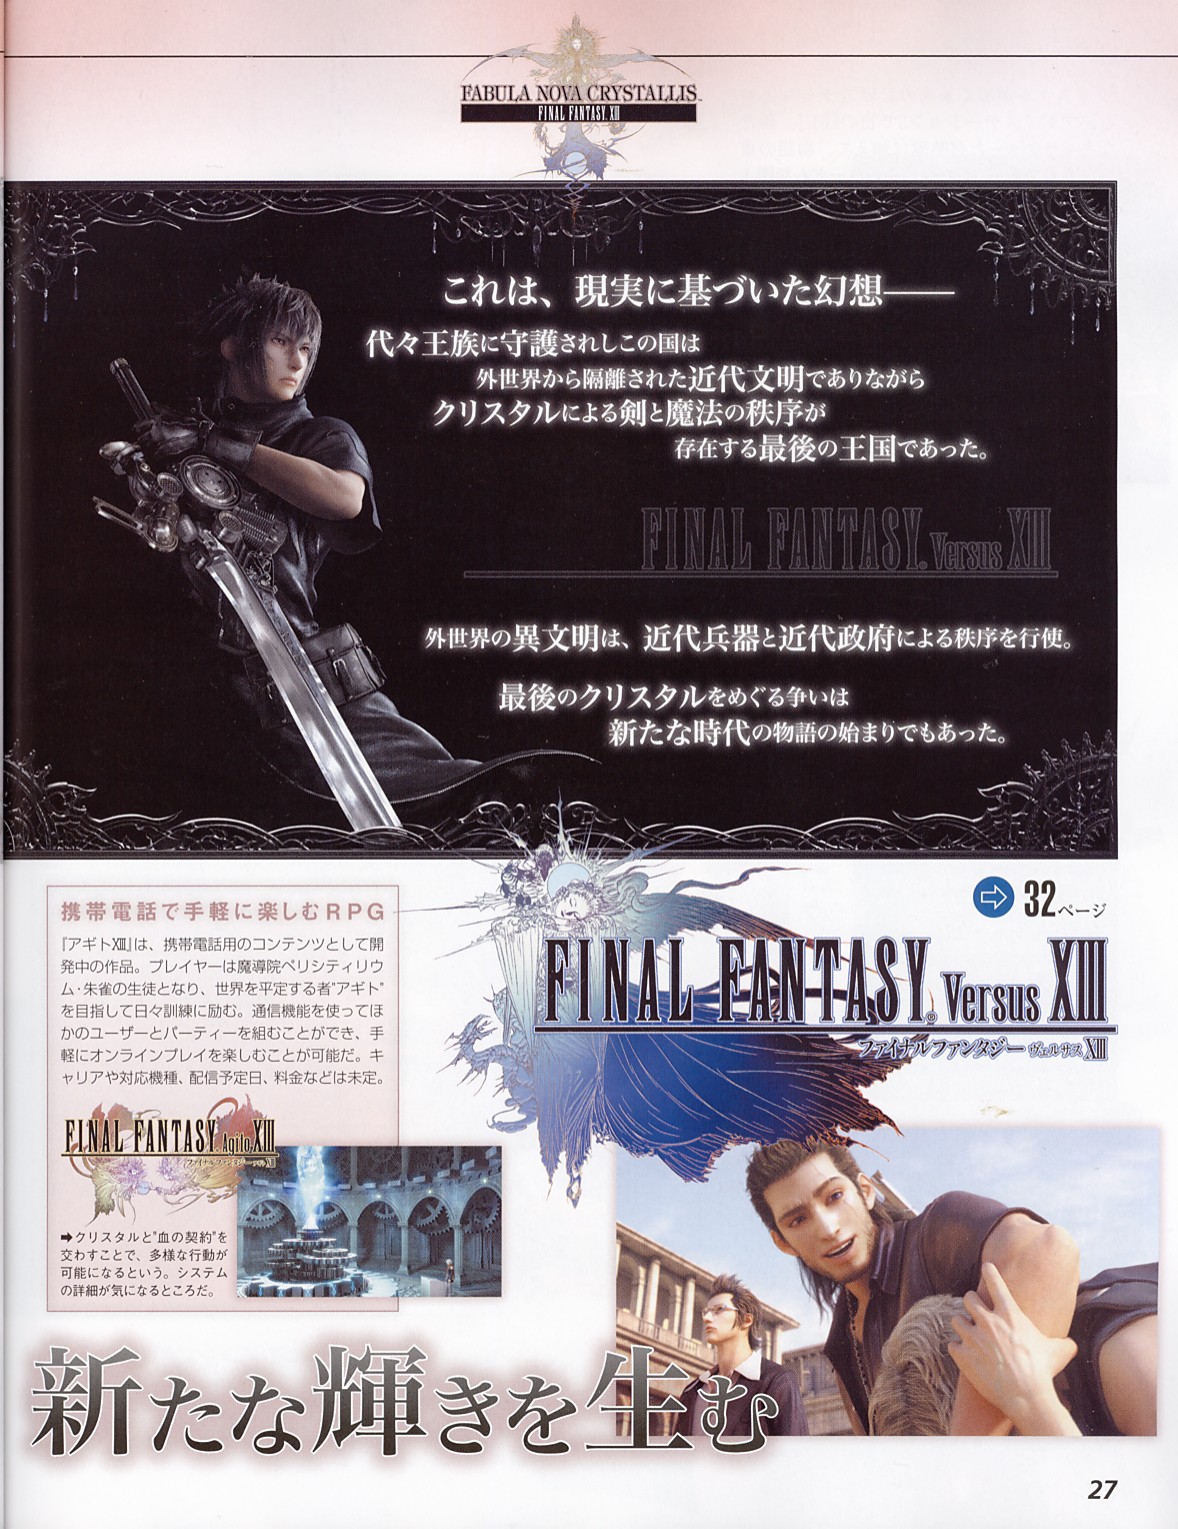 ข้อมูลใหม่เกมส์ Final Fantasy Versus XIII [News]